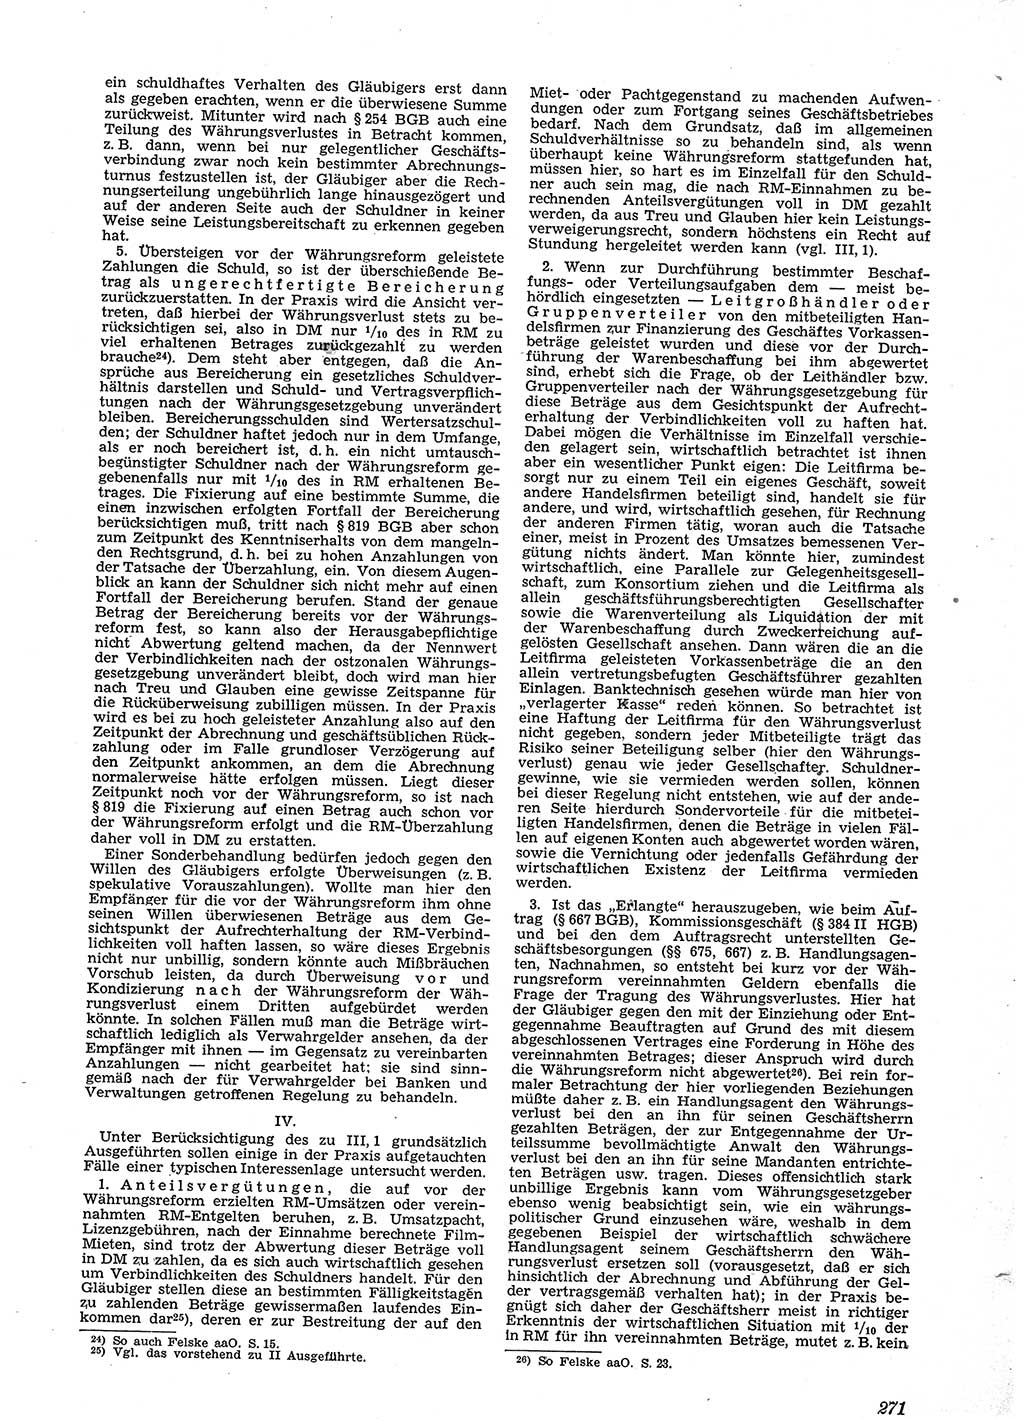 Neue Justiz (NJ), Zeitschrift für Recht und Rechtswissenschaft [Sowjetische Besatzungszone (SBZ) Deutschland], 2. Jahrgang 1948, Seite 271 (NJ SBZ Dtl. 1948, S. 271)